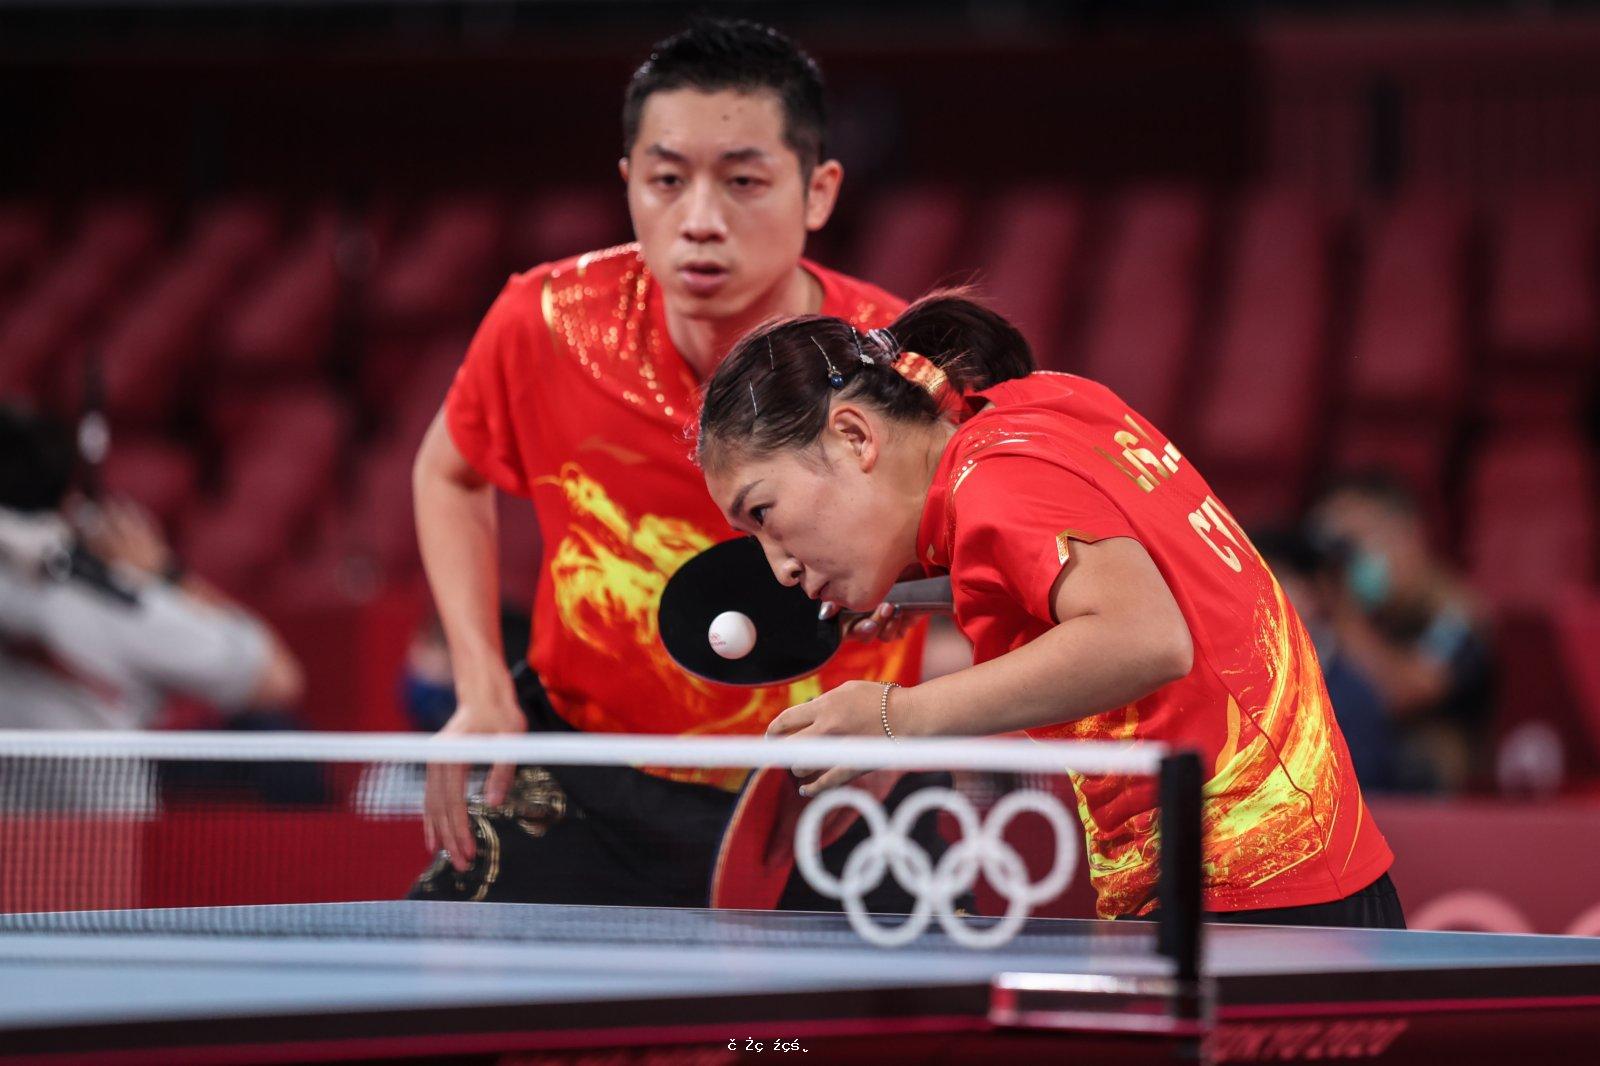 粵將劉詩雯全力衝擊奧運史上混雙首金